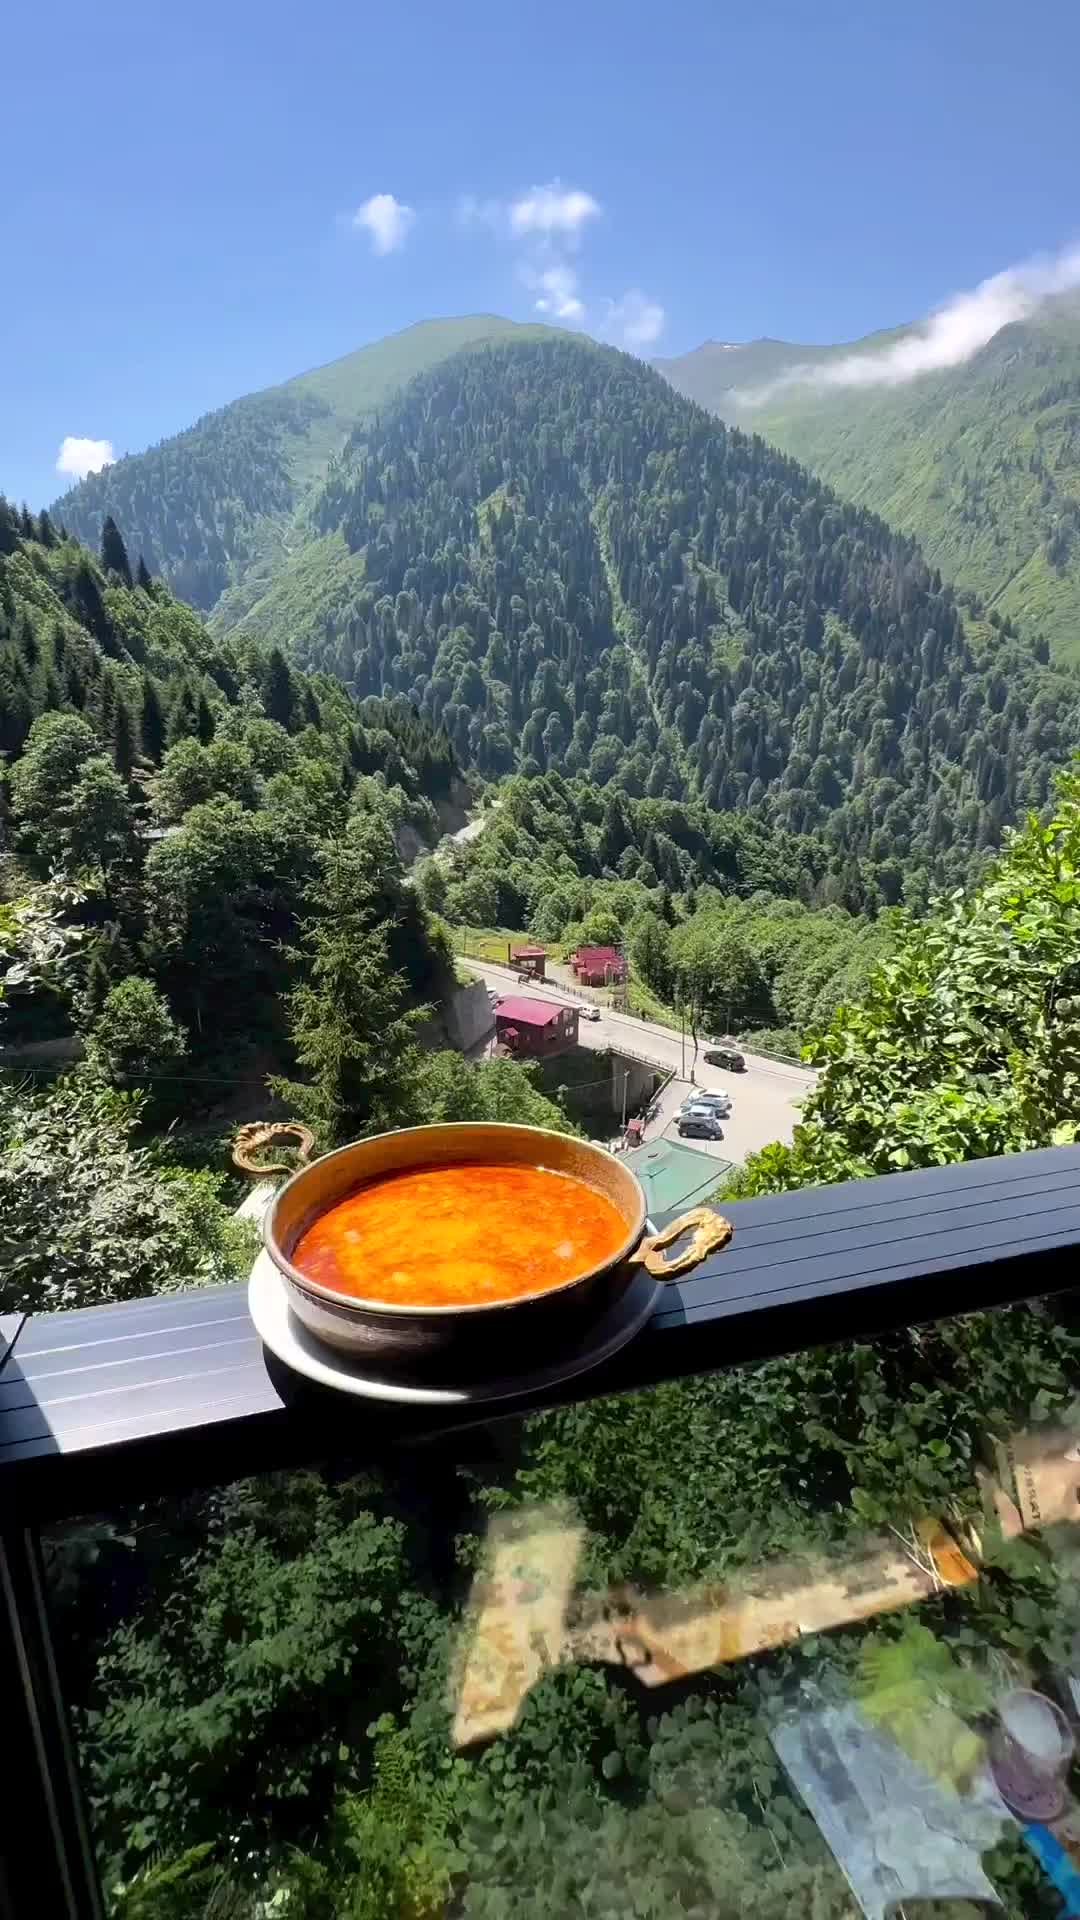 Good Morning from Ayderdağevi, Turkey 🌄